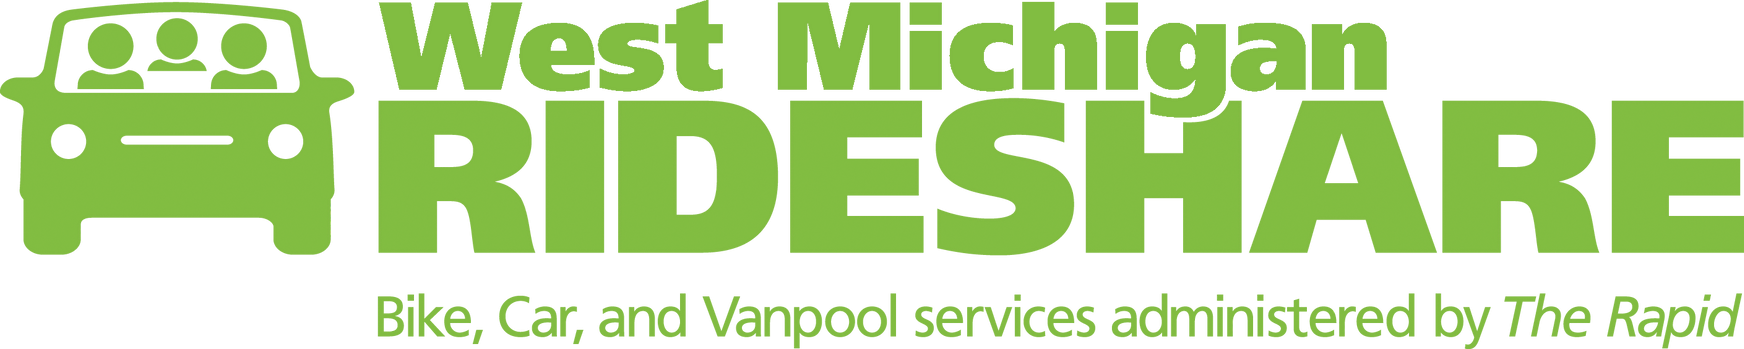 West Michigan Rideshare logo